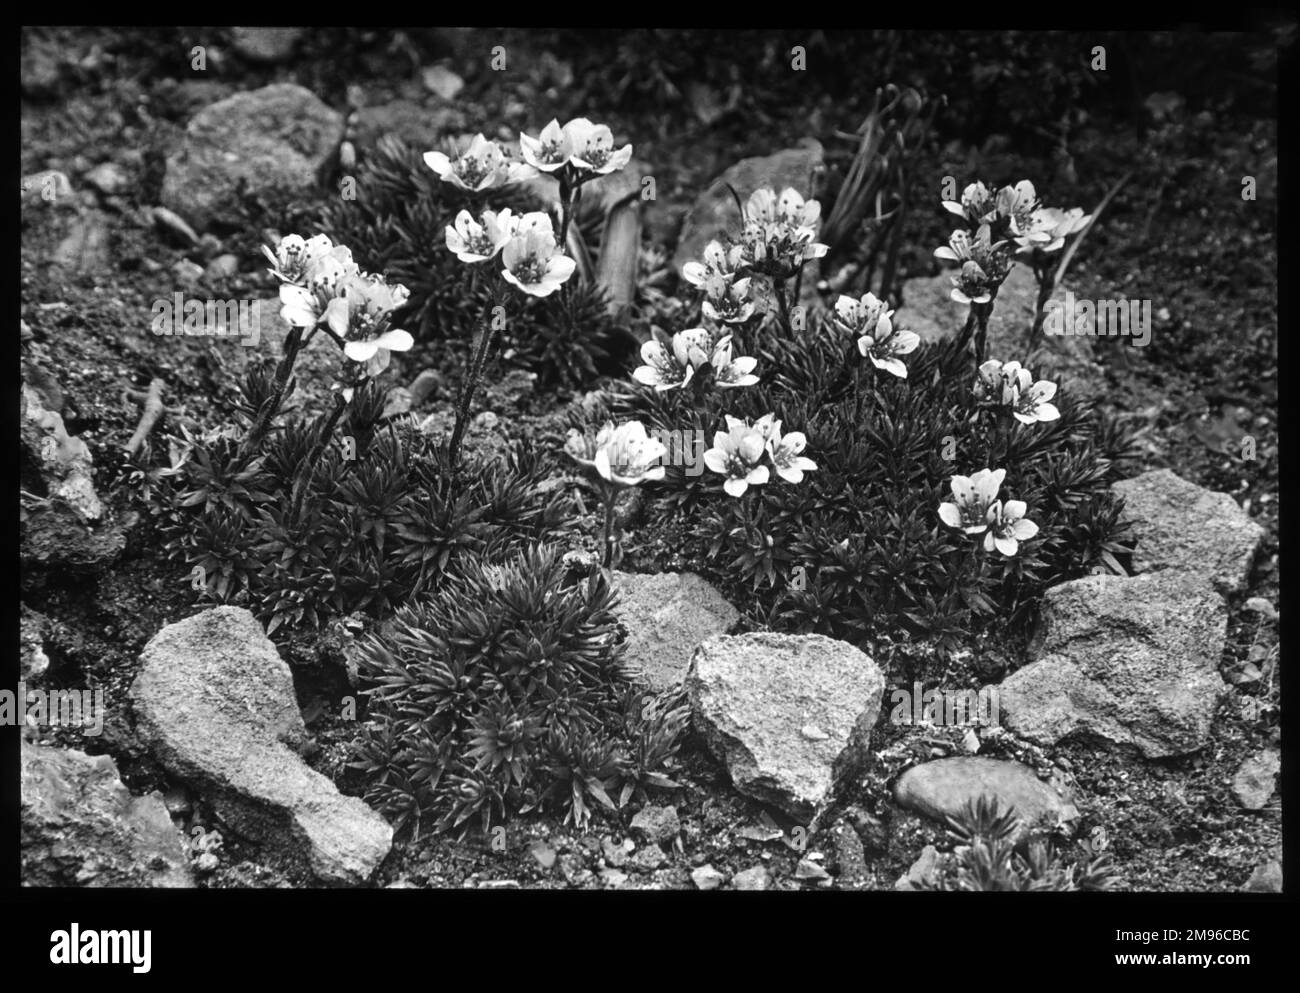 Saxifraga Elizabethe, eine blühende Pflanze der Familie der Saxifragaceae (gemeinhin als Saxifragen oder Steinbrecher bekannt, da sie in den Rissen zwischen den Felsen wachsen können). Hier wachsen sie in einer felsigen Umgebung. Stockfoto